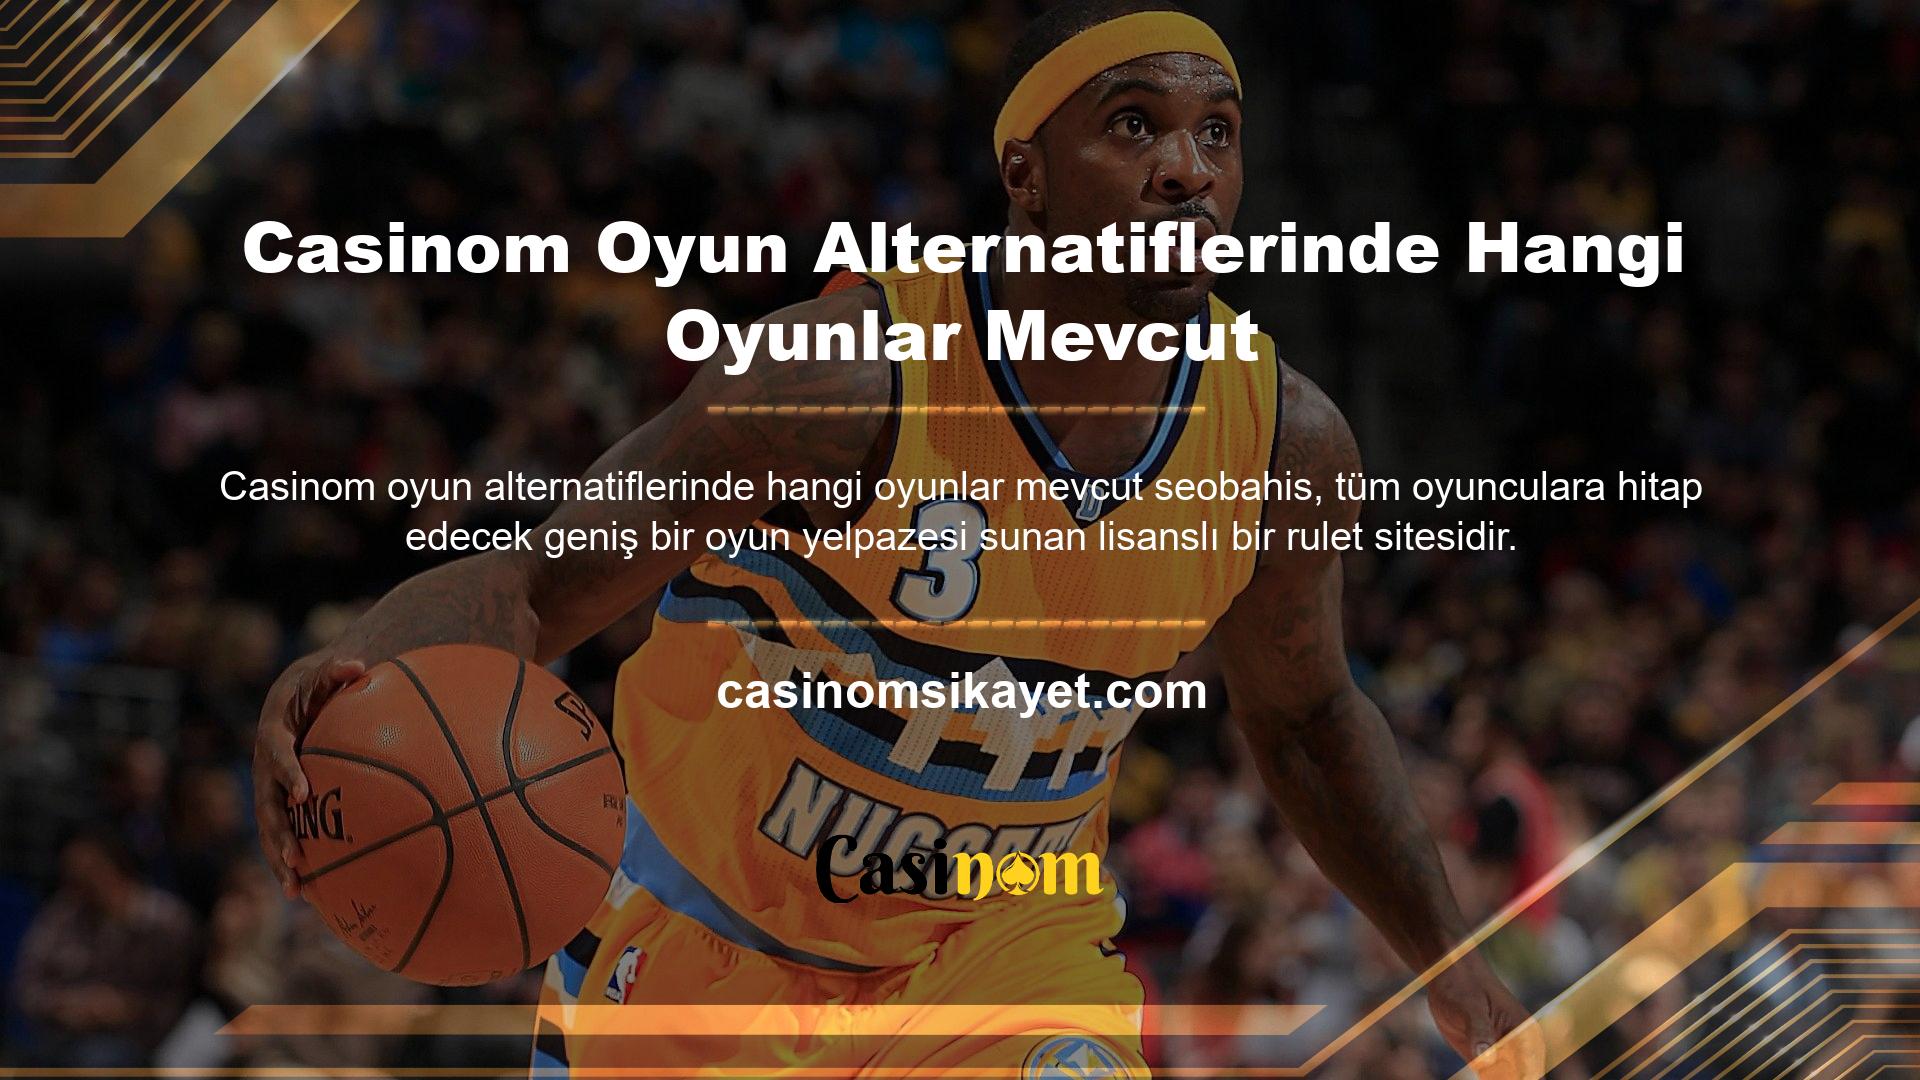 Casinom Oyun Alternatifi Oyunlar ve casino oyunları yayıncısı Casinom com, Türk kullanıcıların sıklıkla ziyaret ettiği adresler arasında kendisine yer edinmiştir